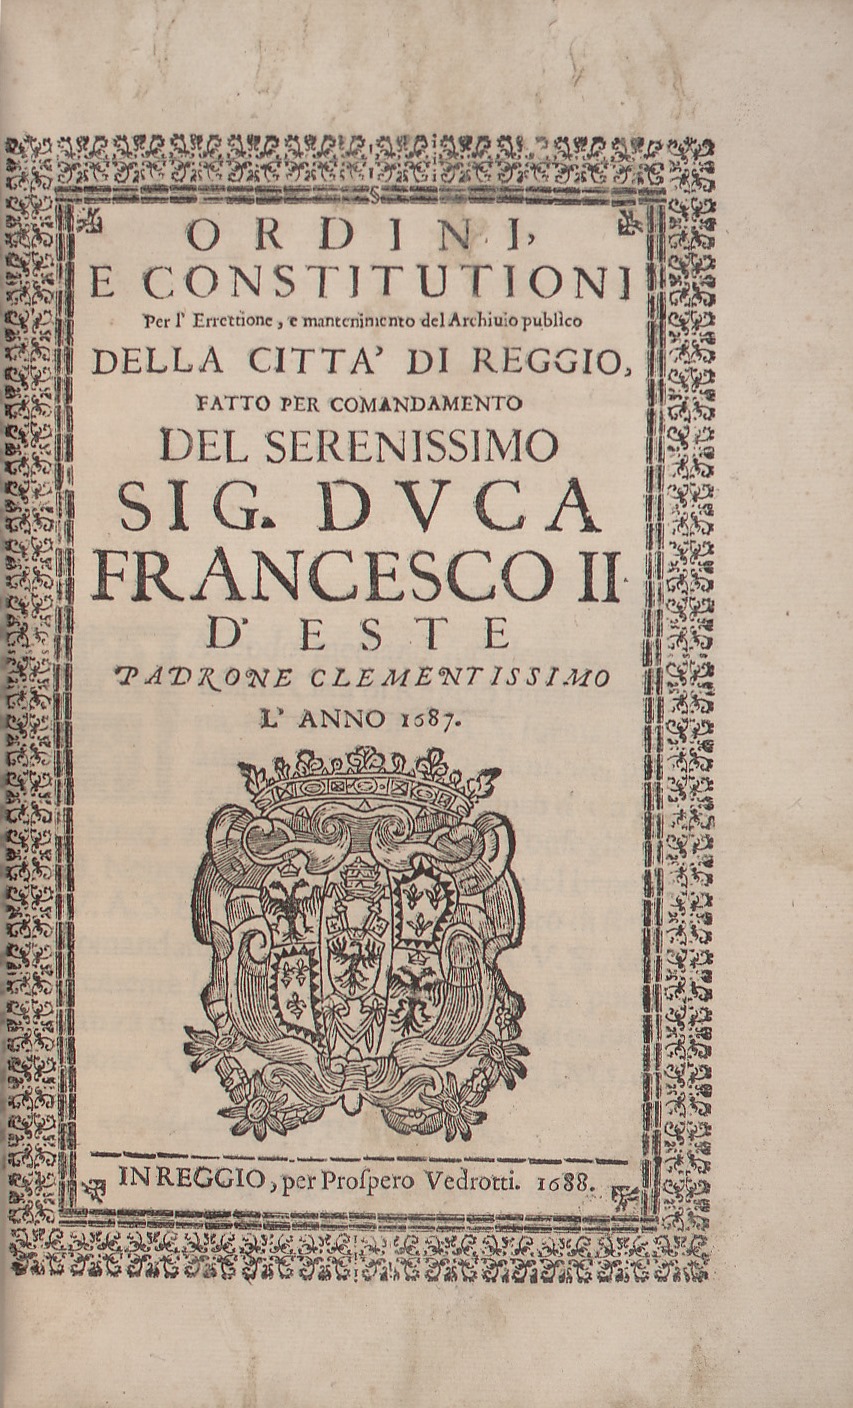 Ordini, e constitutioni per l’errettione, e mantenimento del archivio publico della città di Reggio